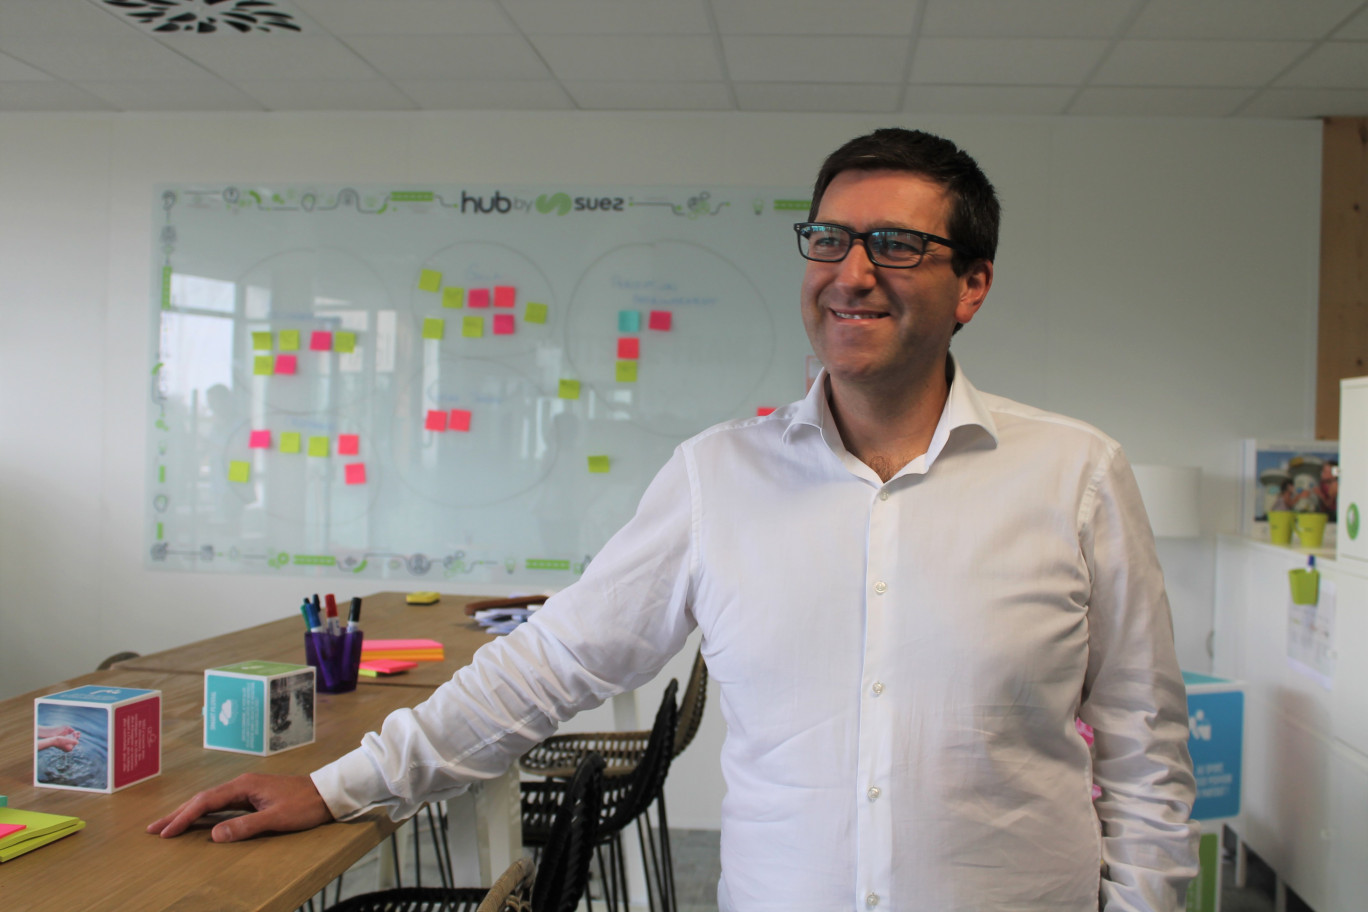 «Nous voulons dynamiser l'innovation en région et la mettre à disposition des clients», explique Xavier Aguirre, directeur commercial et innovation de la région Hauts-de-France chez Suez.